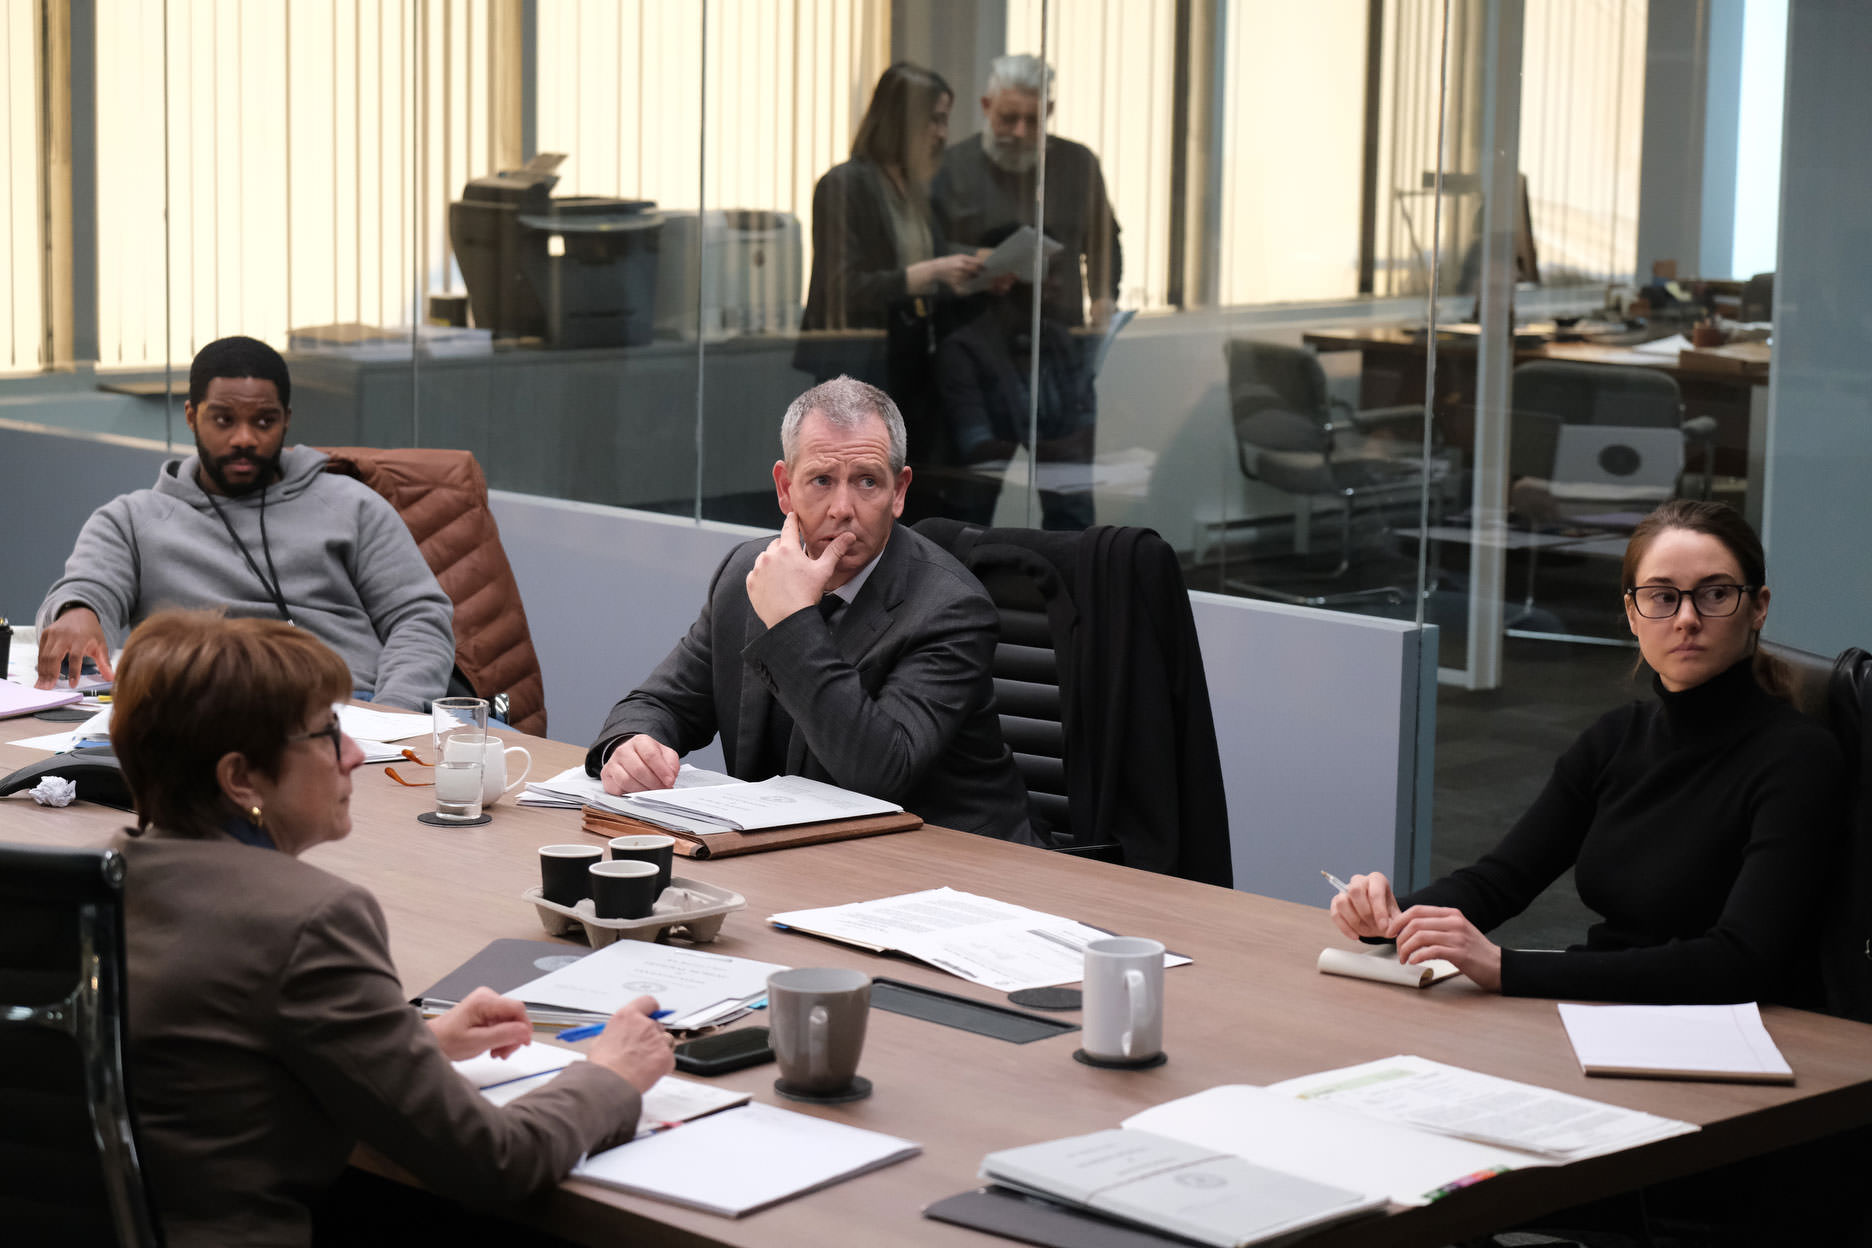 شیلین وودلی، بن مندلسون، و جوان آدپو در کنار چند نفر دیگر نشسته دور یک میز دااخل یک دفتر کار در نمایی از فیلم برای گرفتن یک قاتل به کارگردانی دامیان شیفرون